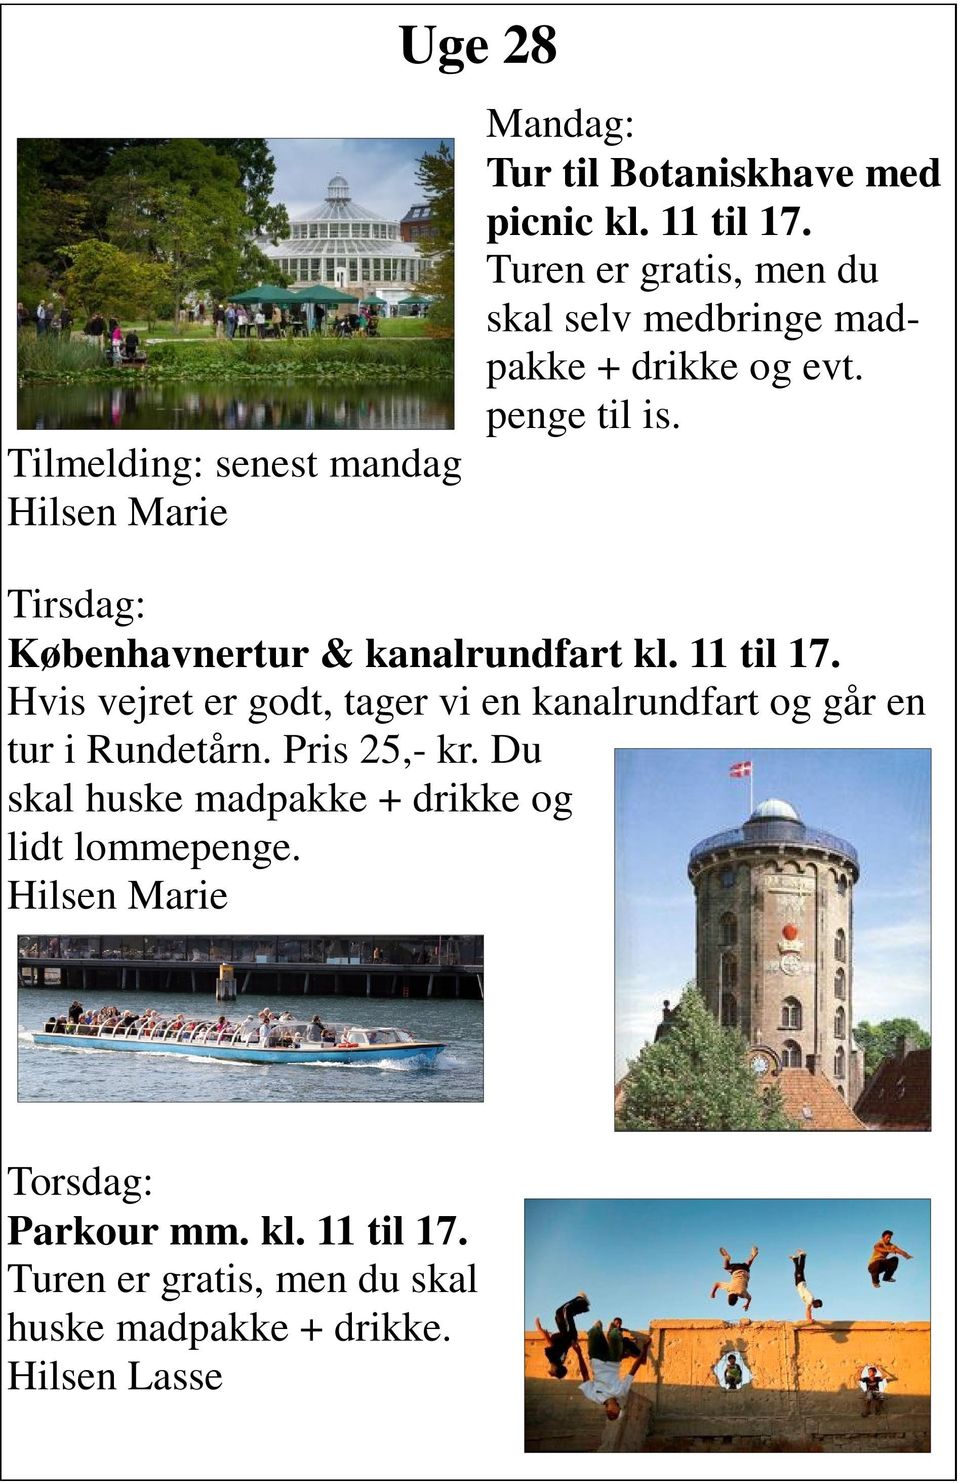 Tirsdag: Københavnertur & kanalrundfart kl. 11 til 17.